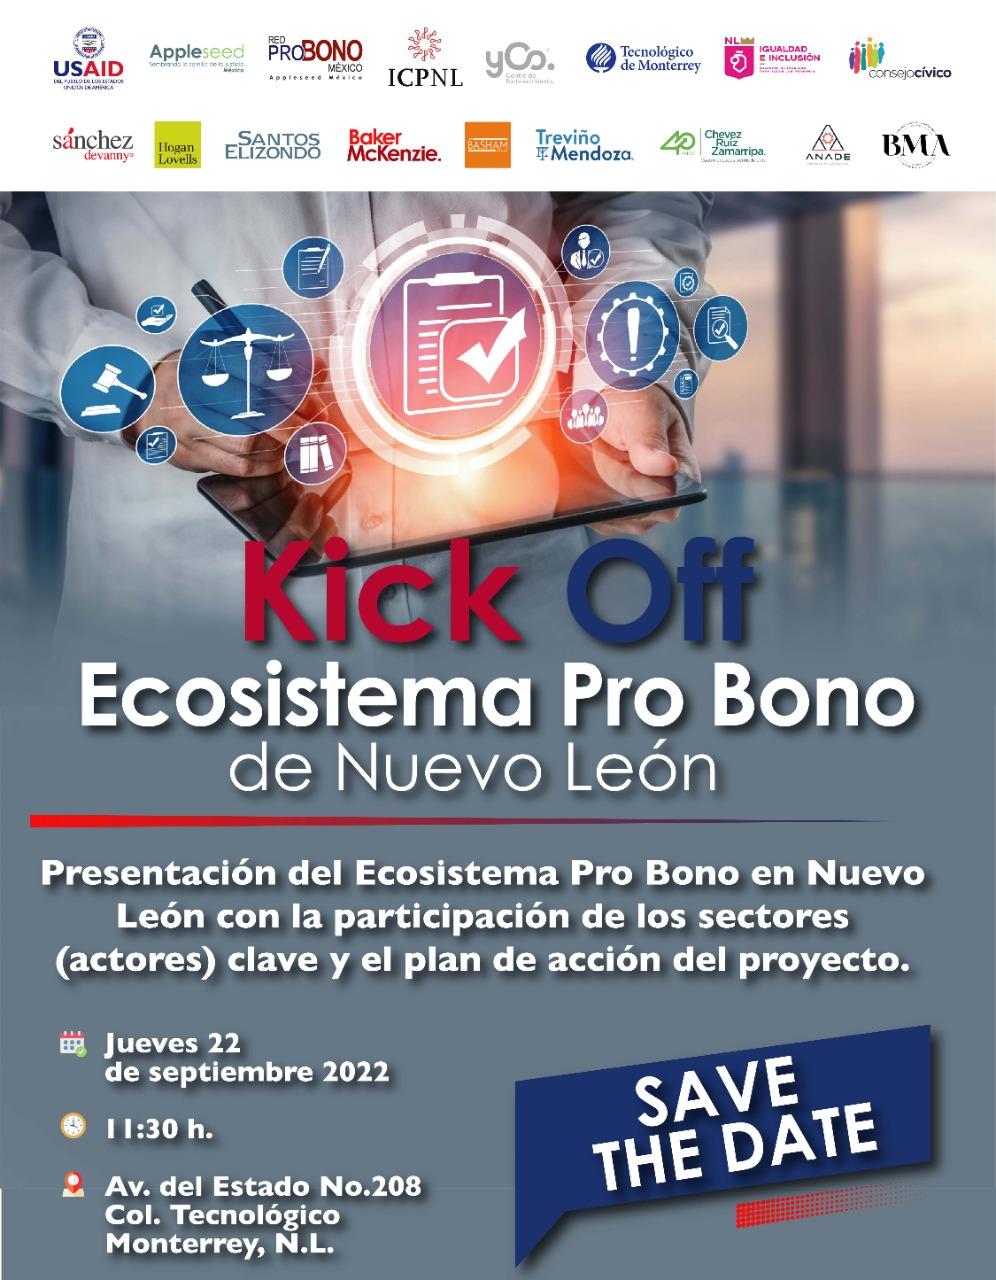 Lanzamiento del Ecosistema Pro Bono de Nuevo León